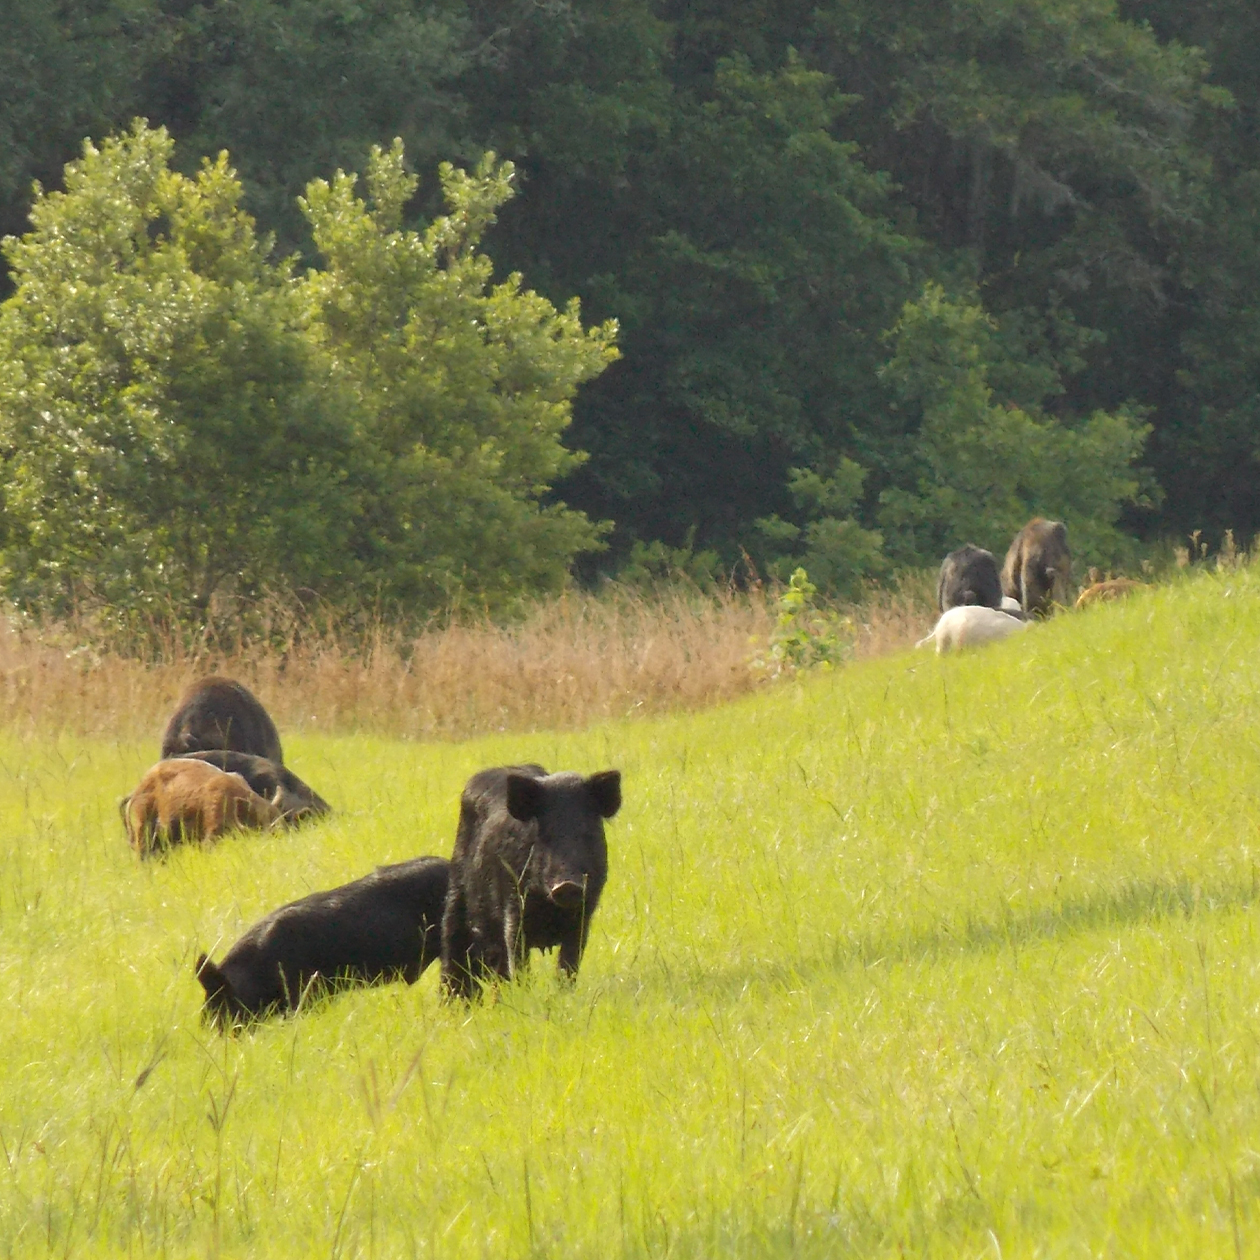 Pigs grazing in a field.